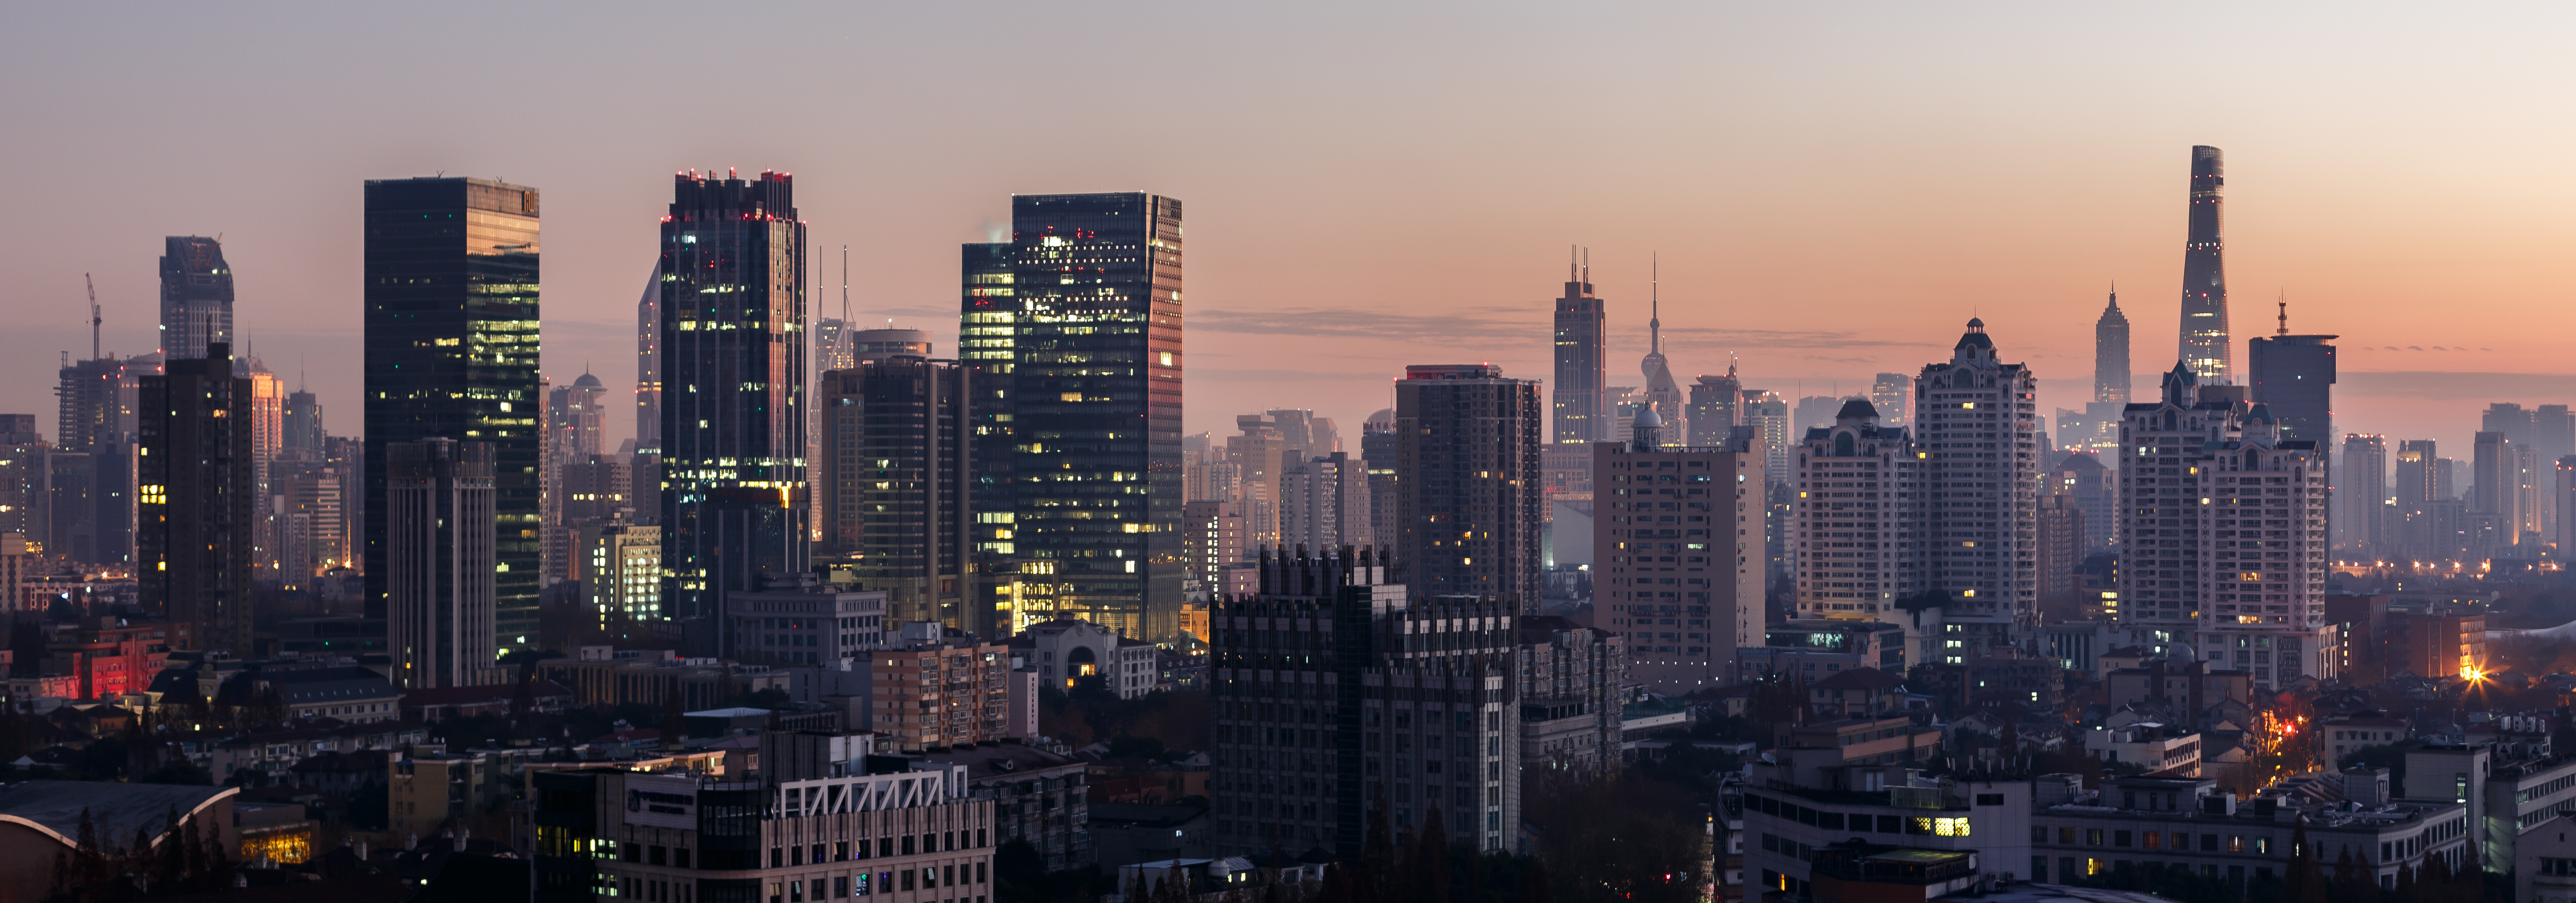 Shanghai Skyline - Panorama